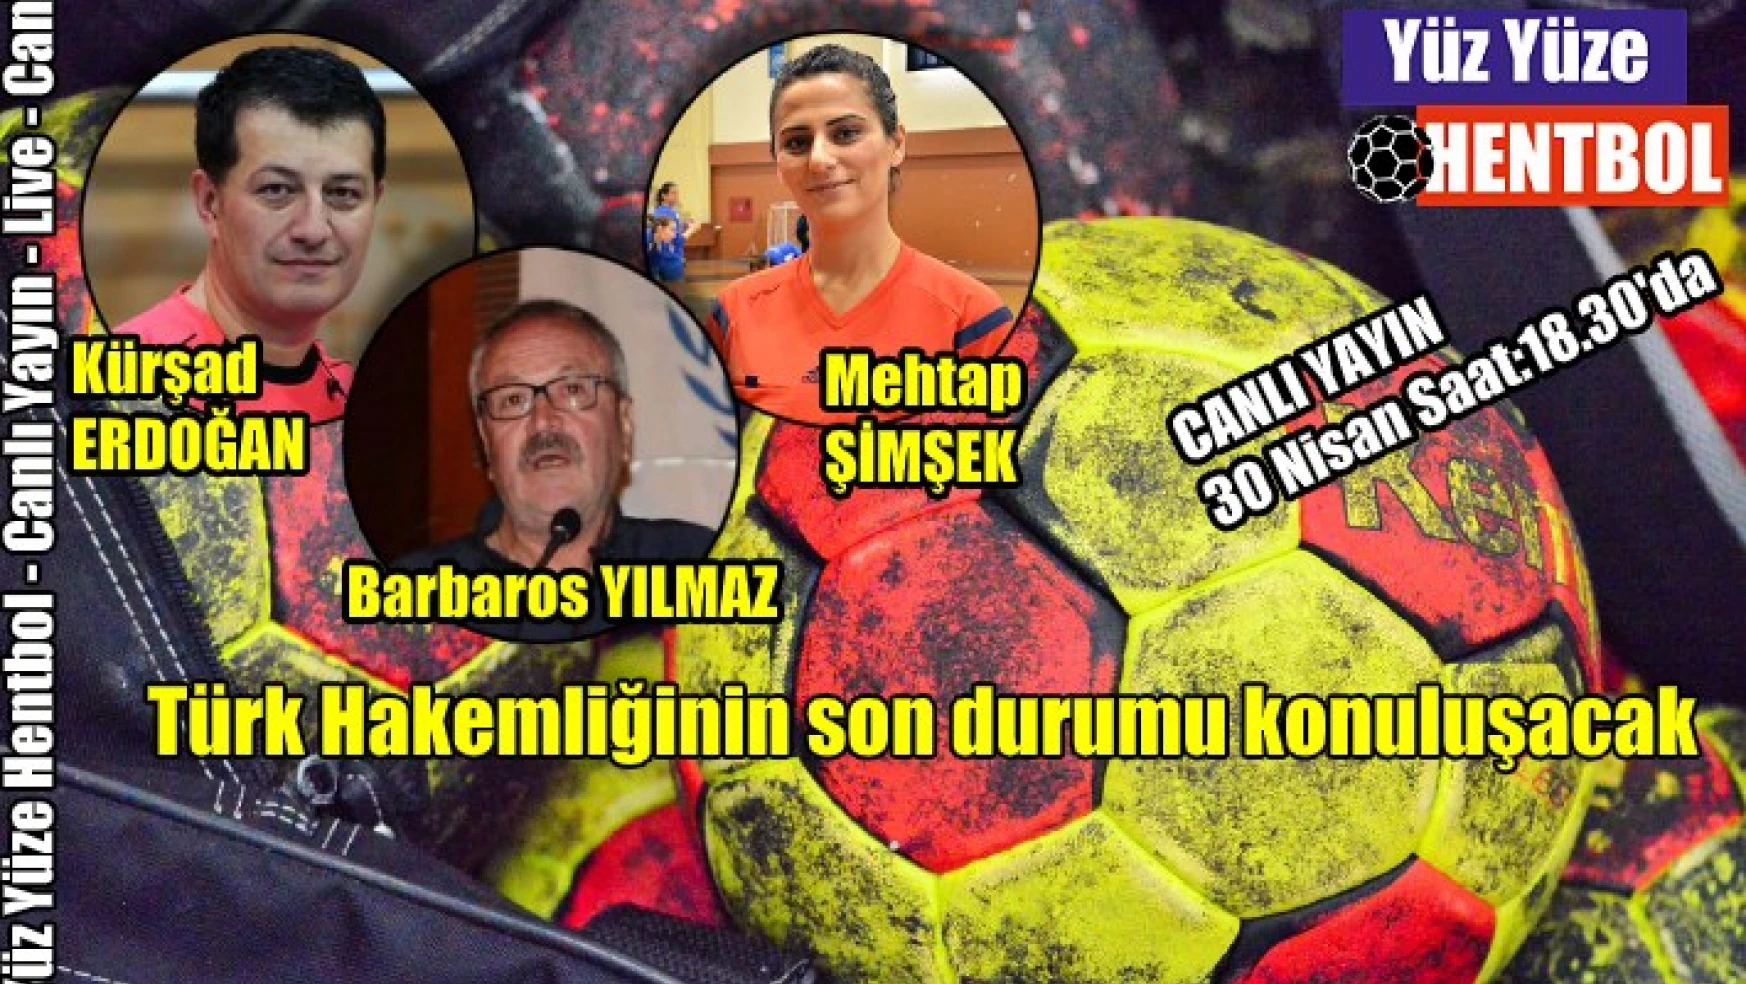 Yüz Yüze Hentbol’da konu: “Türk Hakemliği”